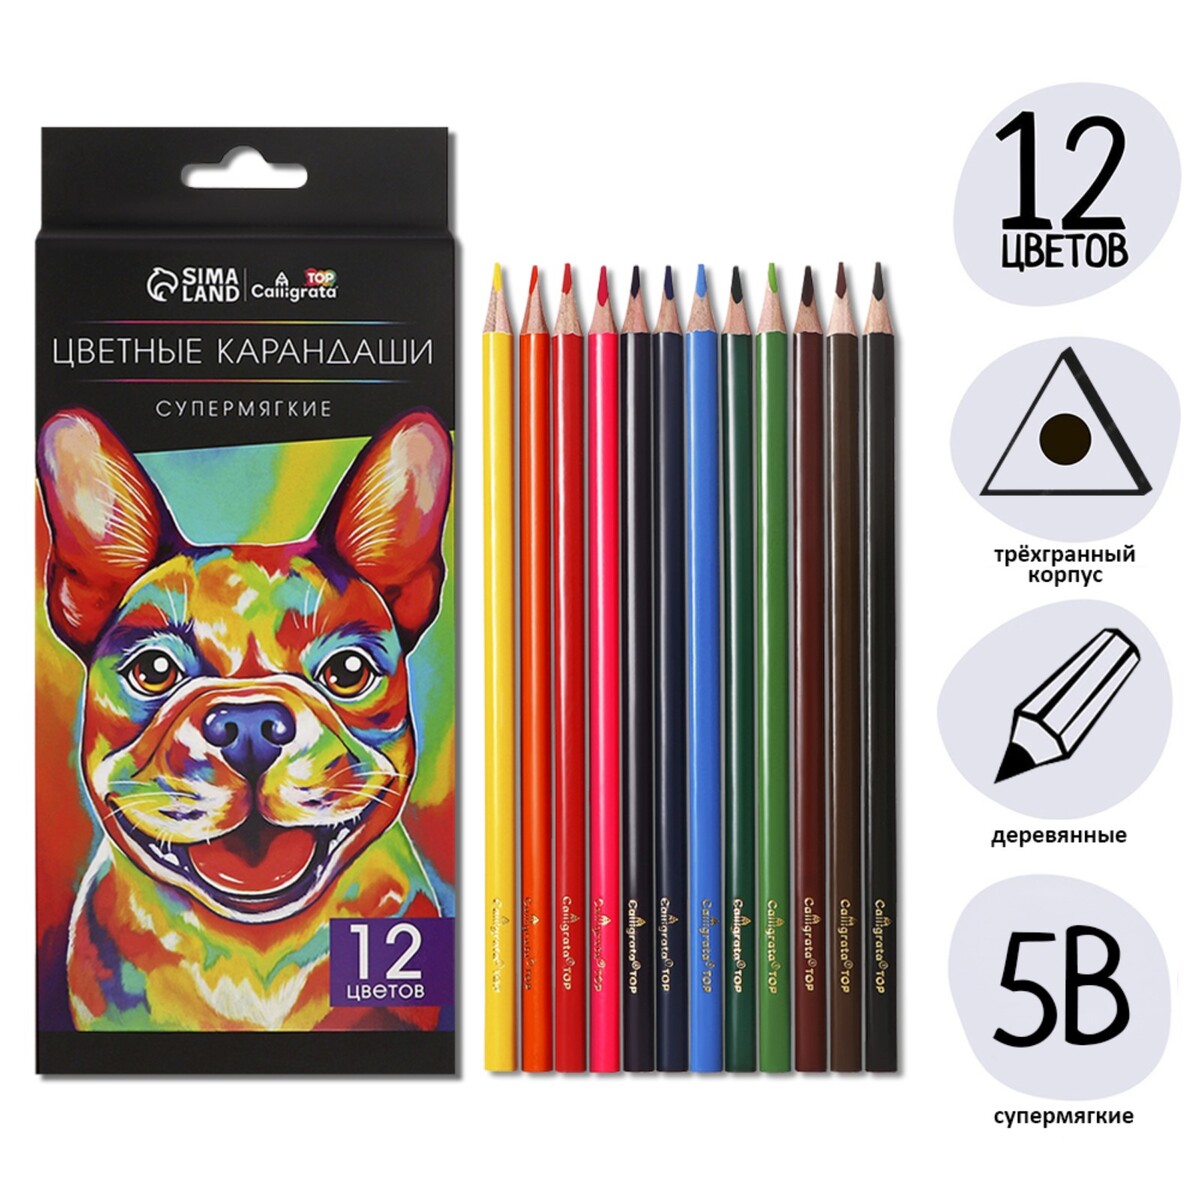 Карандаши 12 цветов top calligrata, в картонной коробке, диаметр грифеля - 3мм, 5b карандаши 6 ов мини в картонной коробке